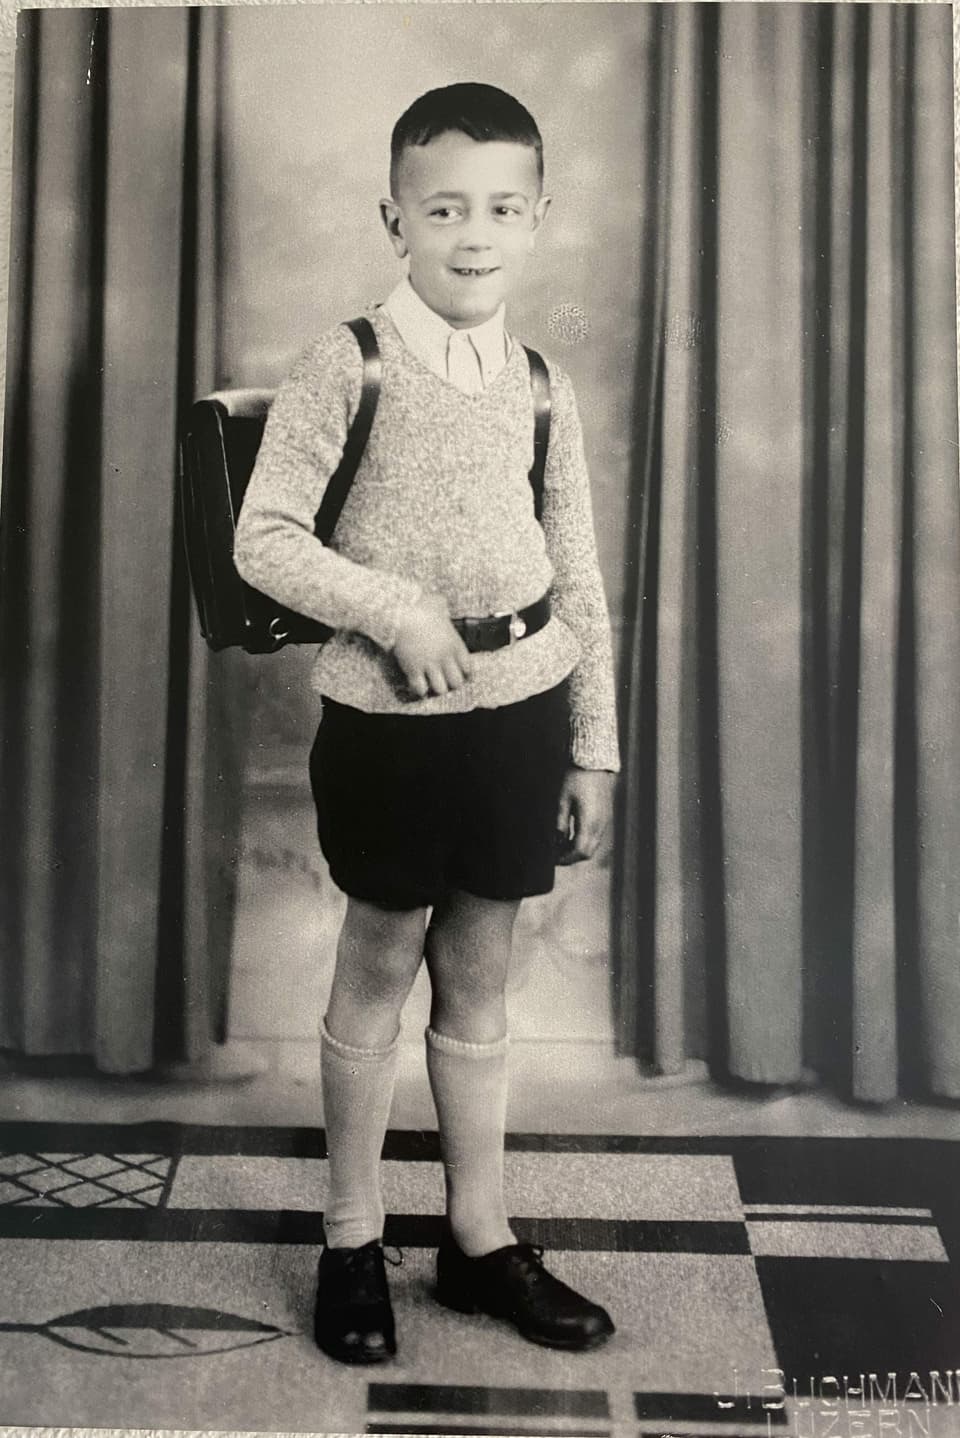 Ein Bub mit einem Schulsack auf einem Schwarzweiss-Foto.